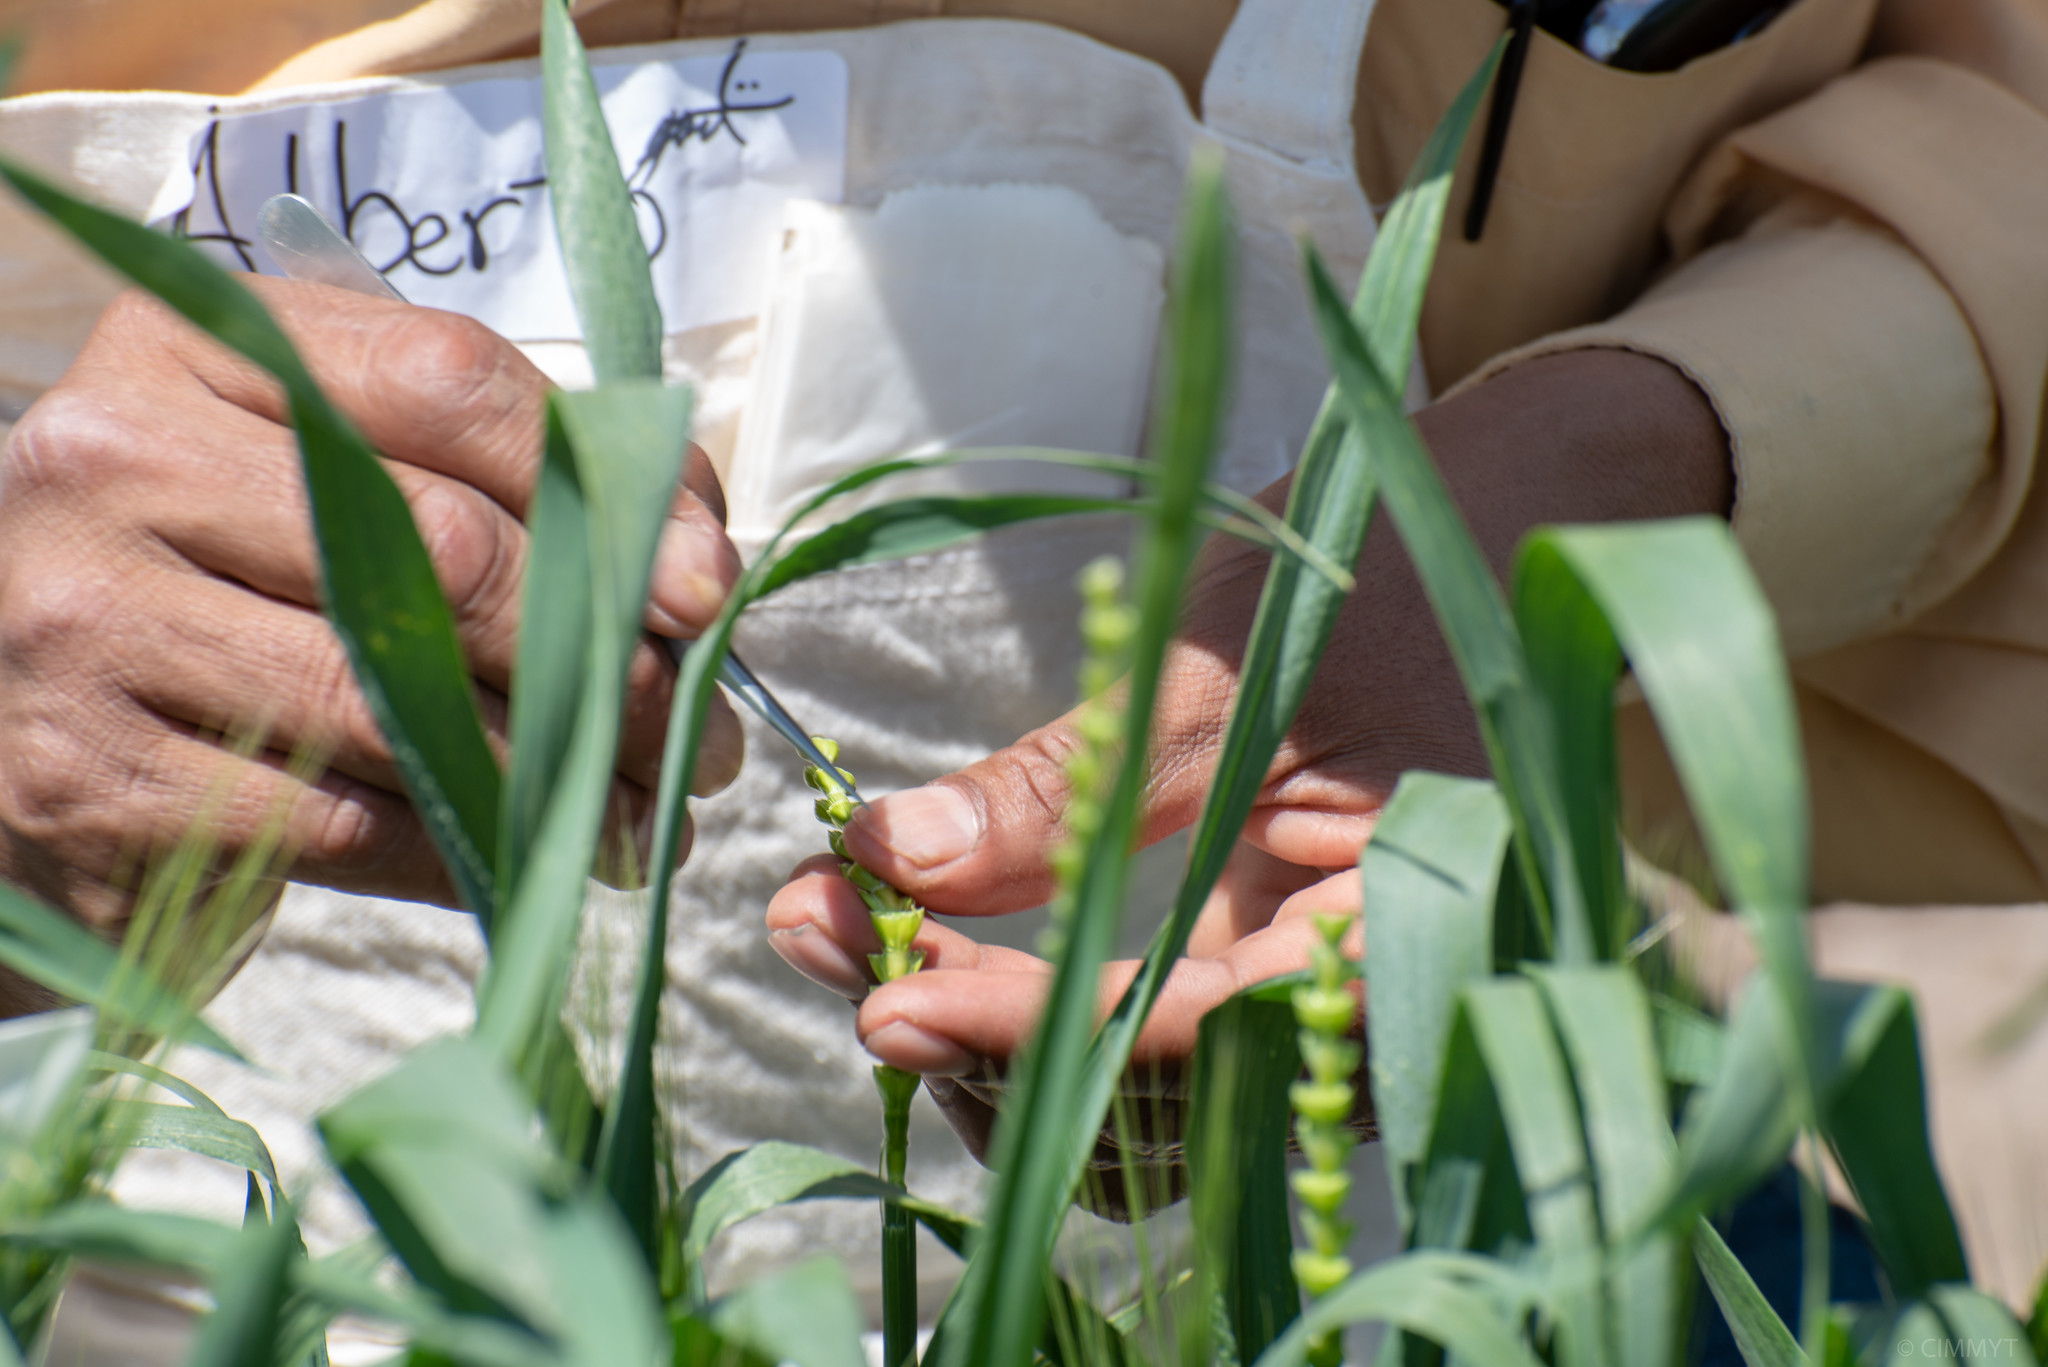 Un trabajador del campo retira la flor masculina de una espiga de trigo, como parte de la polinización controlada en el mejoramiento. (Foto: Alfonso Cortés/CIMMYT)